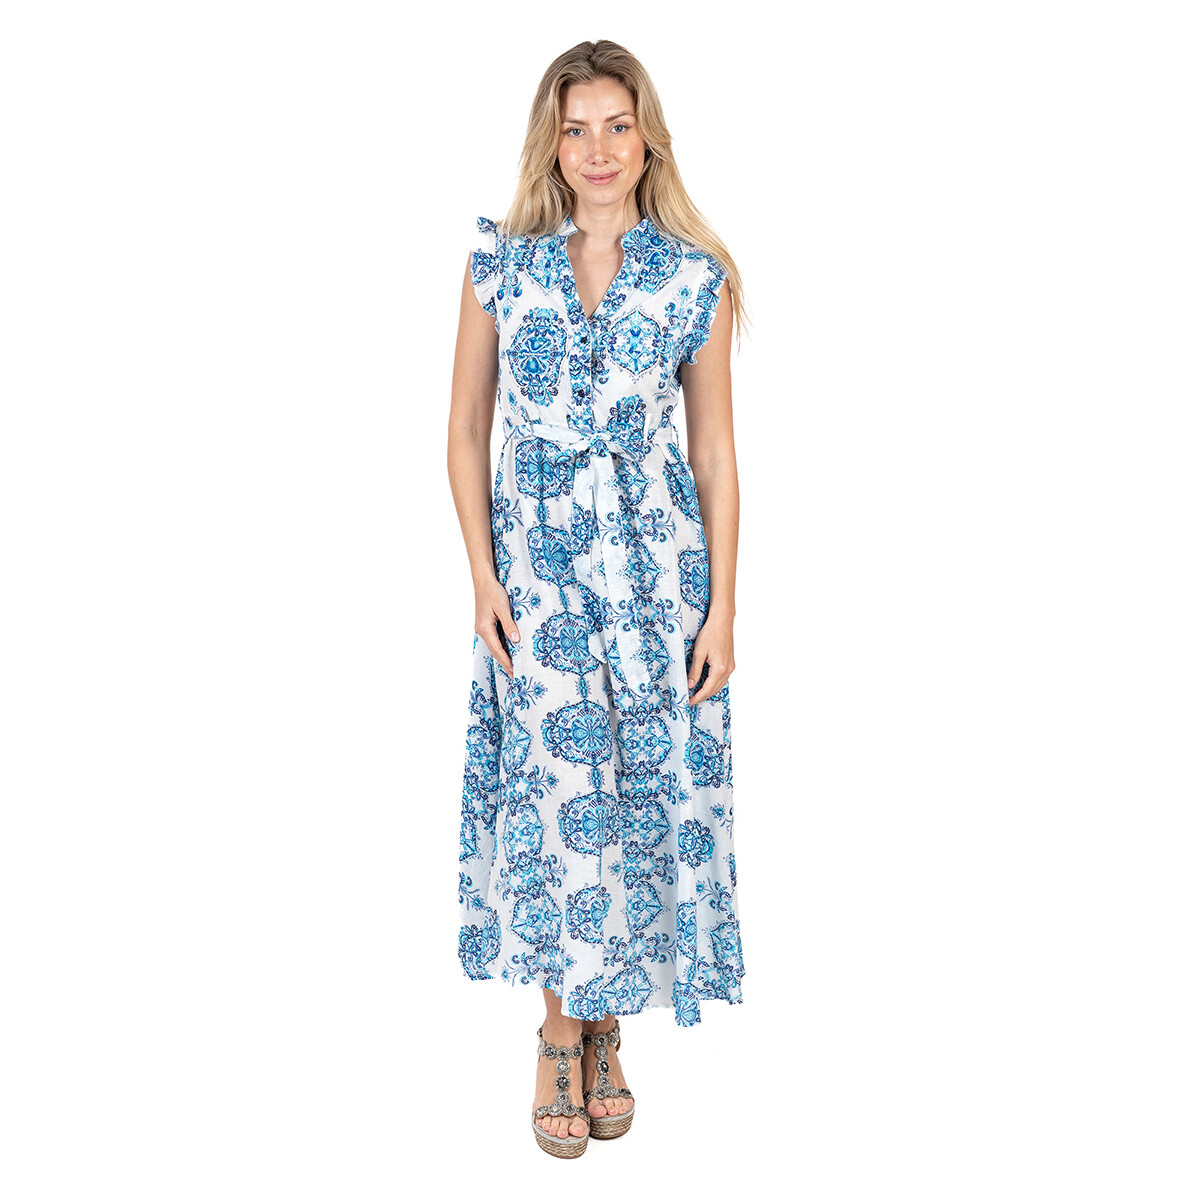 Oblačila Ženske Obleke Isla Bonita By Sigris Obleka Modra